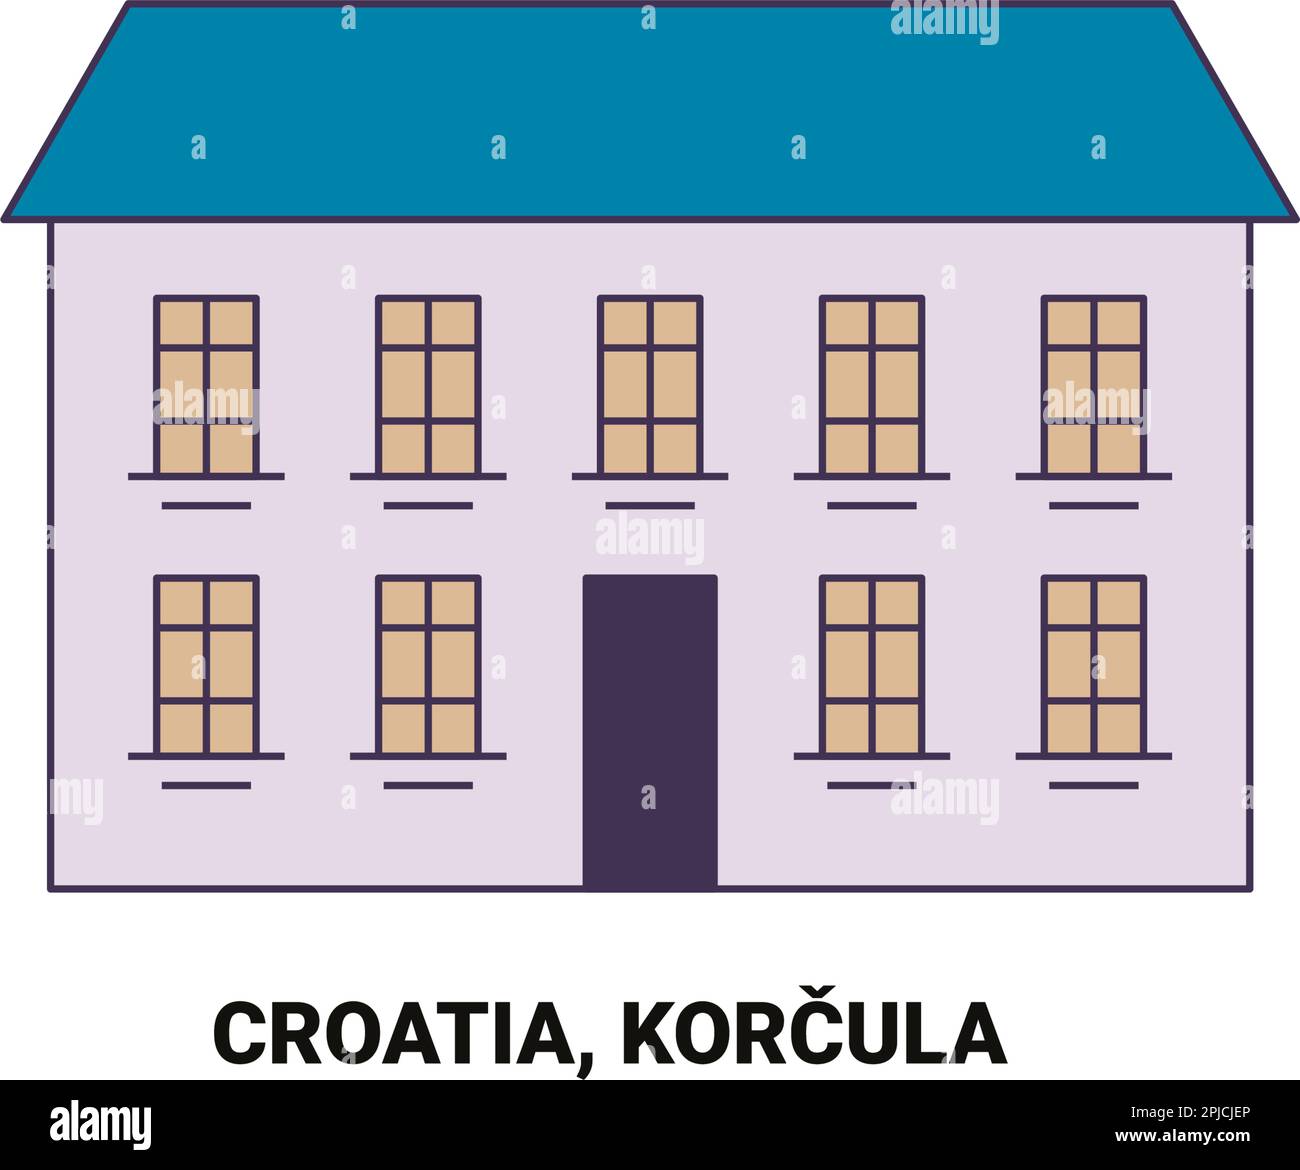 Kroatien, Korcula Reise-Wahrzeichen-Vektordarstellung Stock Vektor